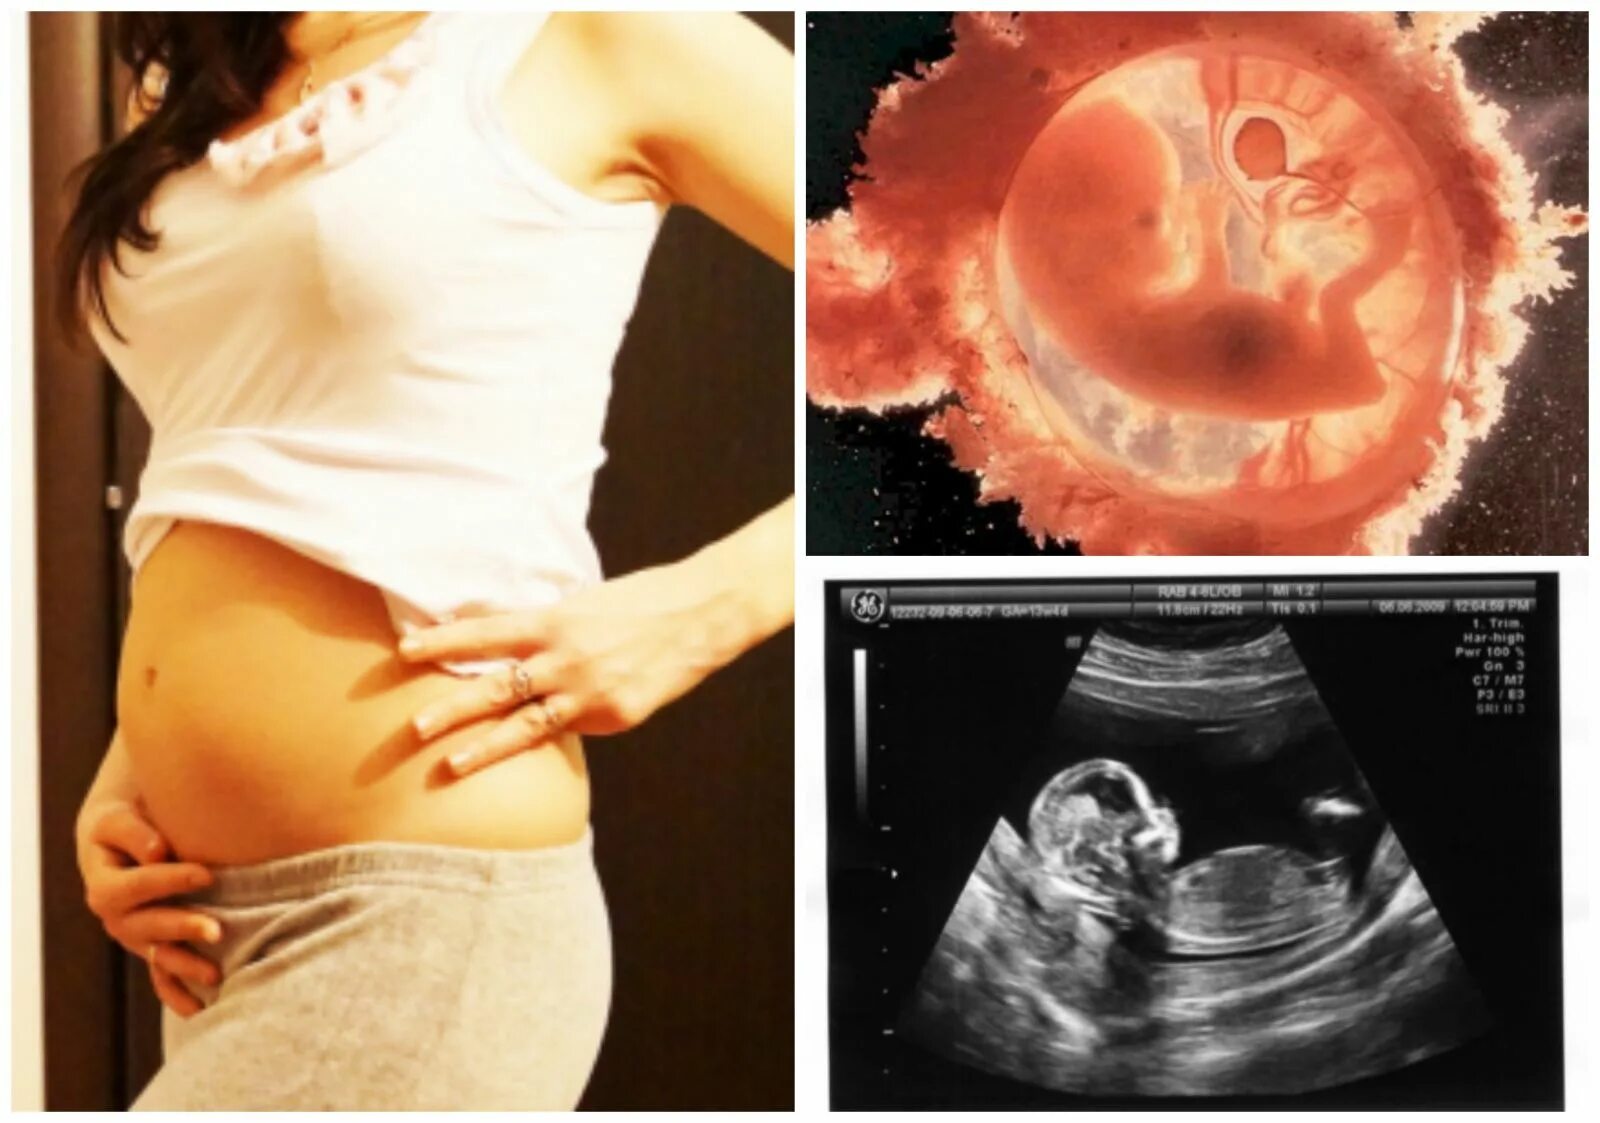 14 2 недели беременности. Ребенок на 13 неделе беременности УЗИ. Размер эмбриона в 13 недель беременности. 13 Недель беременности фото плода на УЗИ.